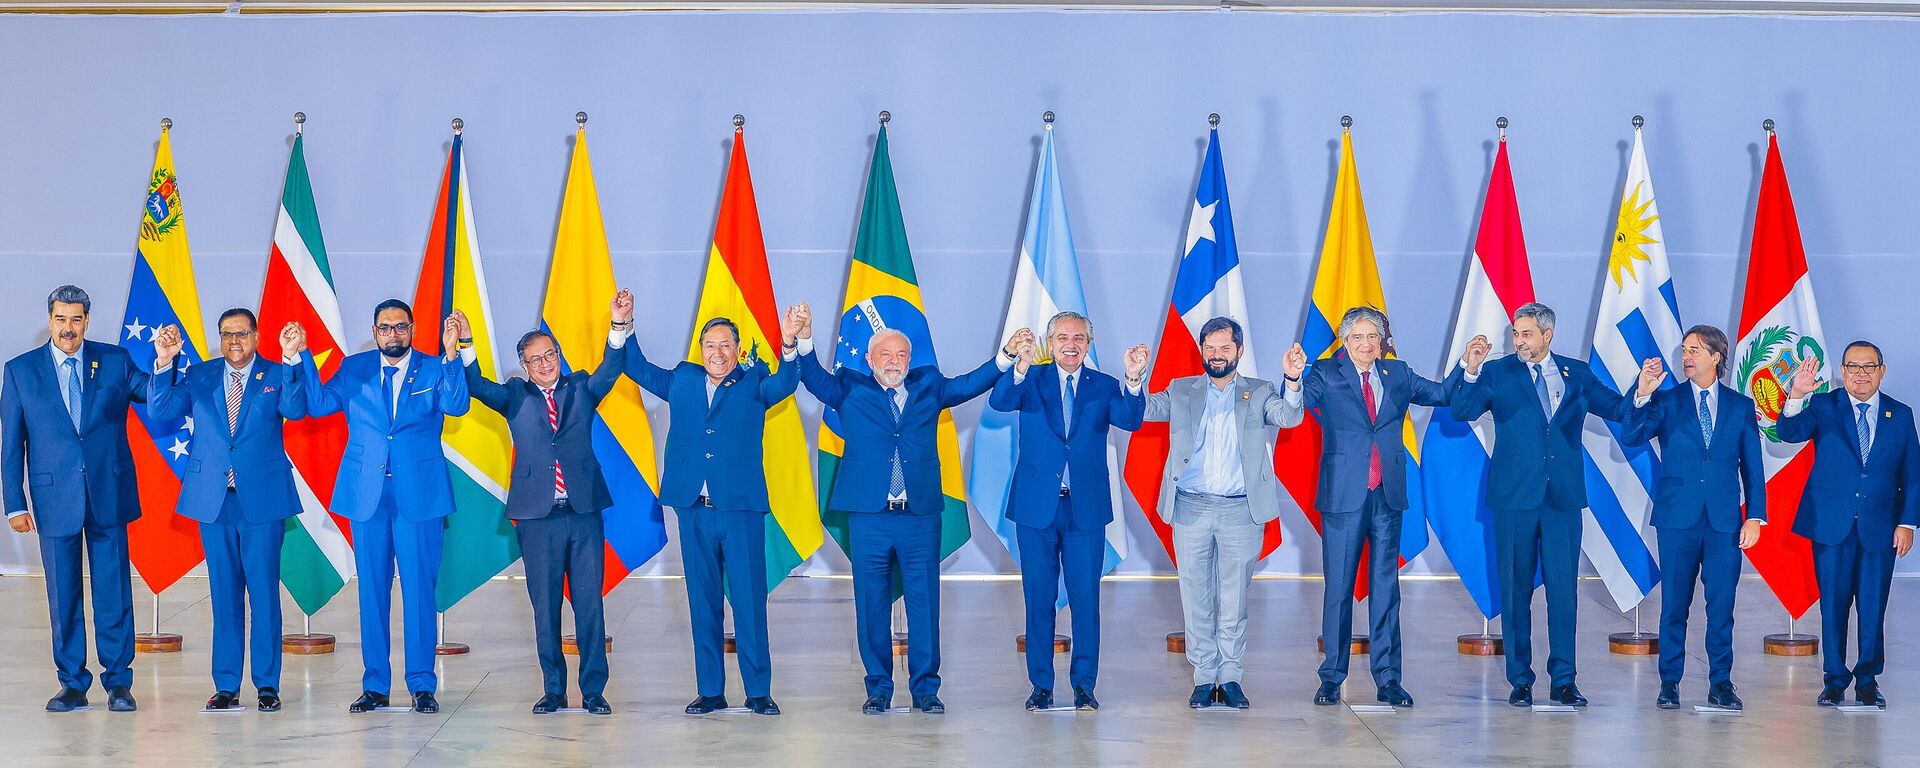 Fotografia oficial dos Presidentes dos países da América do Sul durante a Cúpula do Sul, 30 de maio de 2023 - Sputnik Brasil, 1920, 31.05.2023